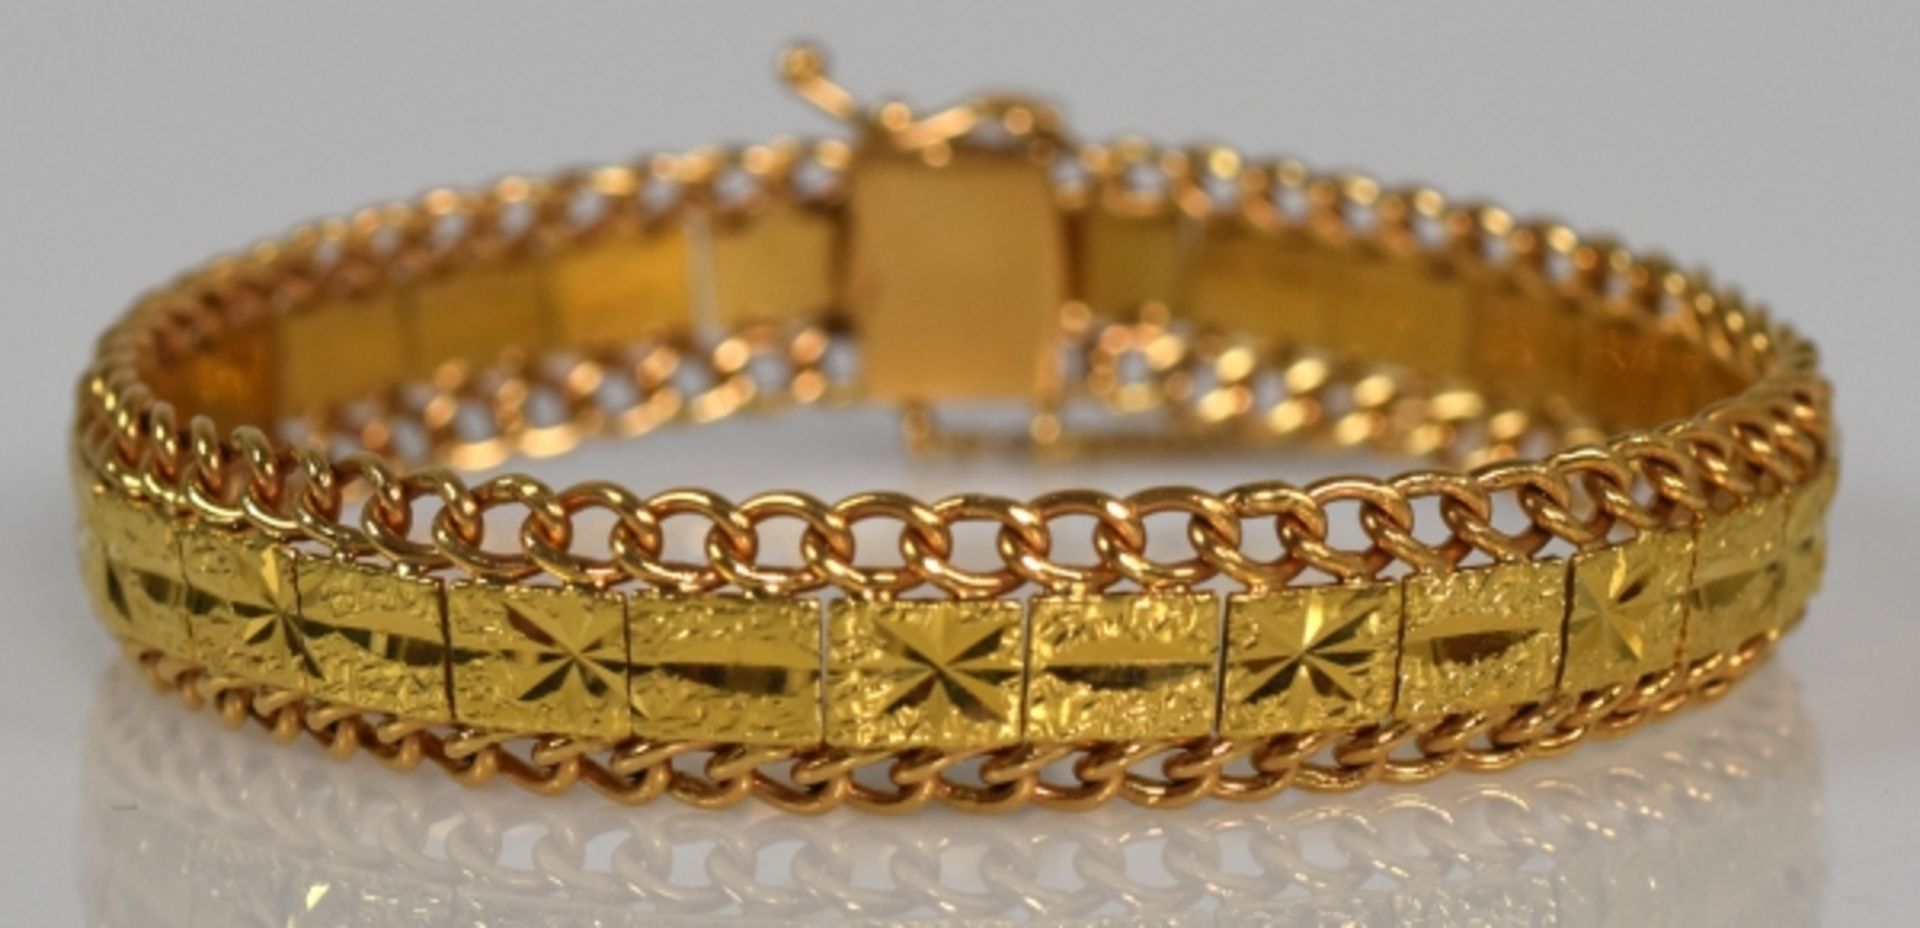 ARMBAND mit dekorierten, rechteckigen Goldplatten in der Mitte und durchbrochenen Rändern, Gold